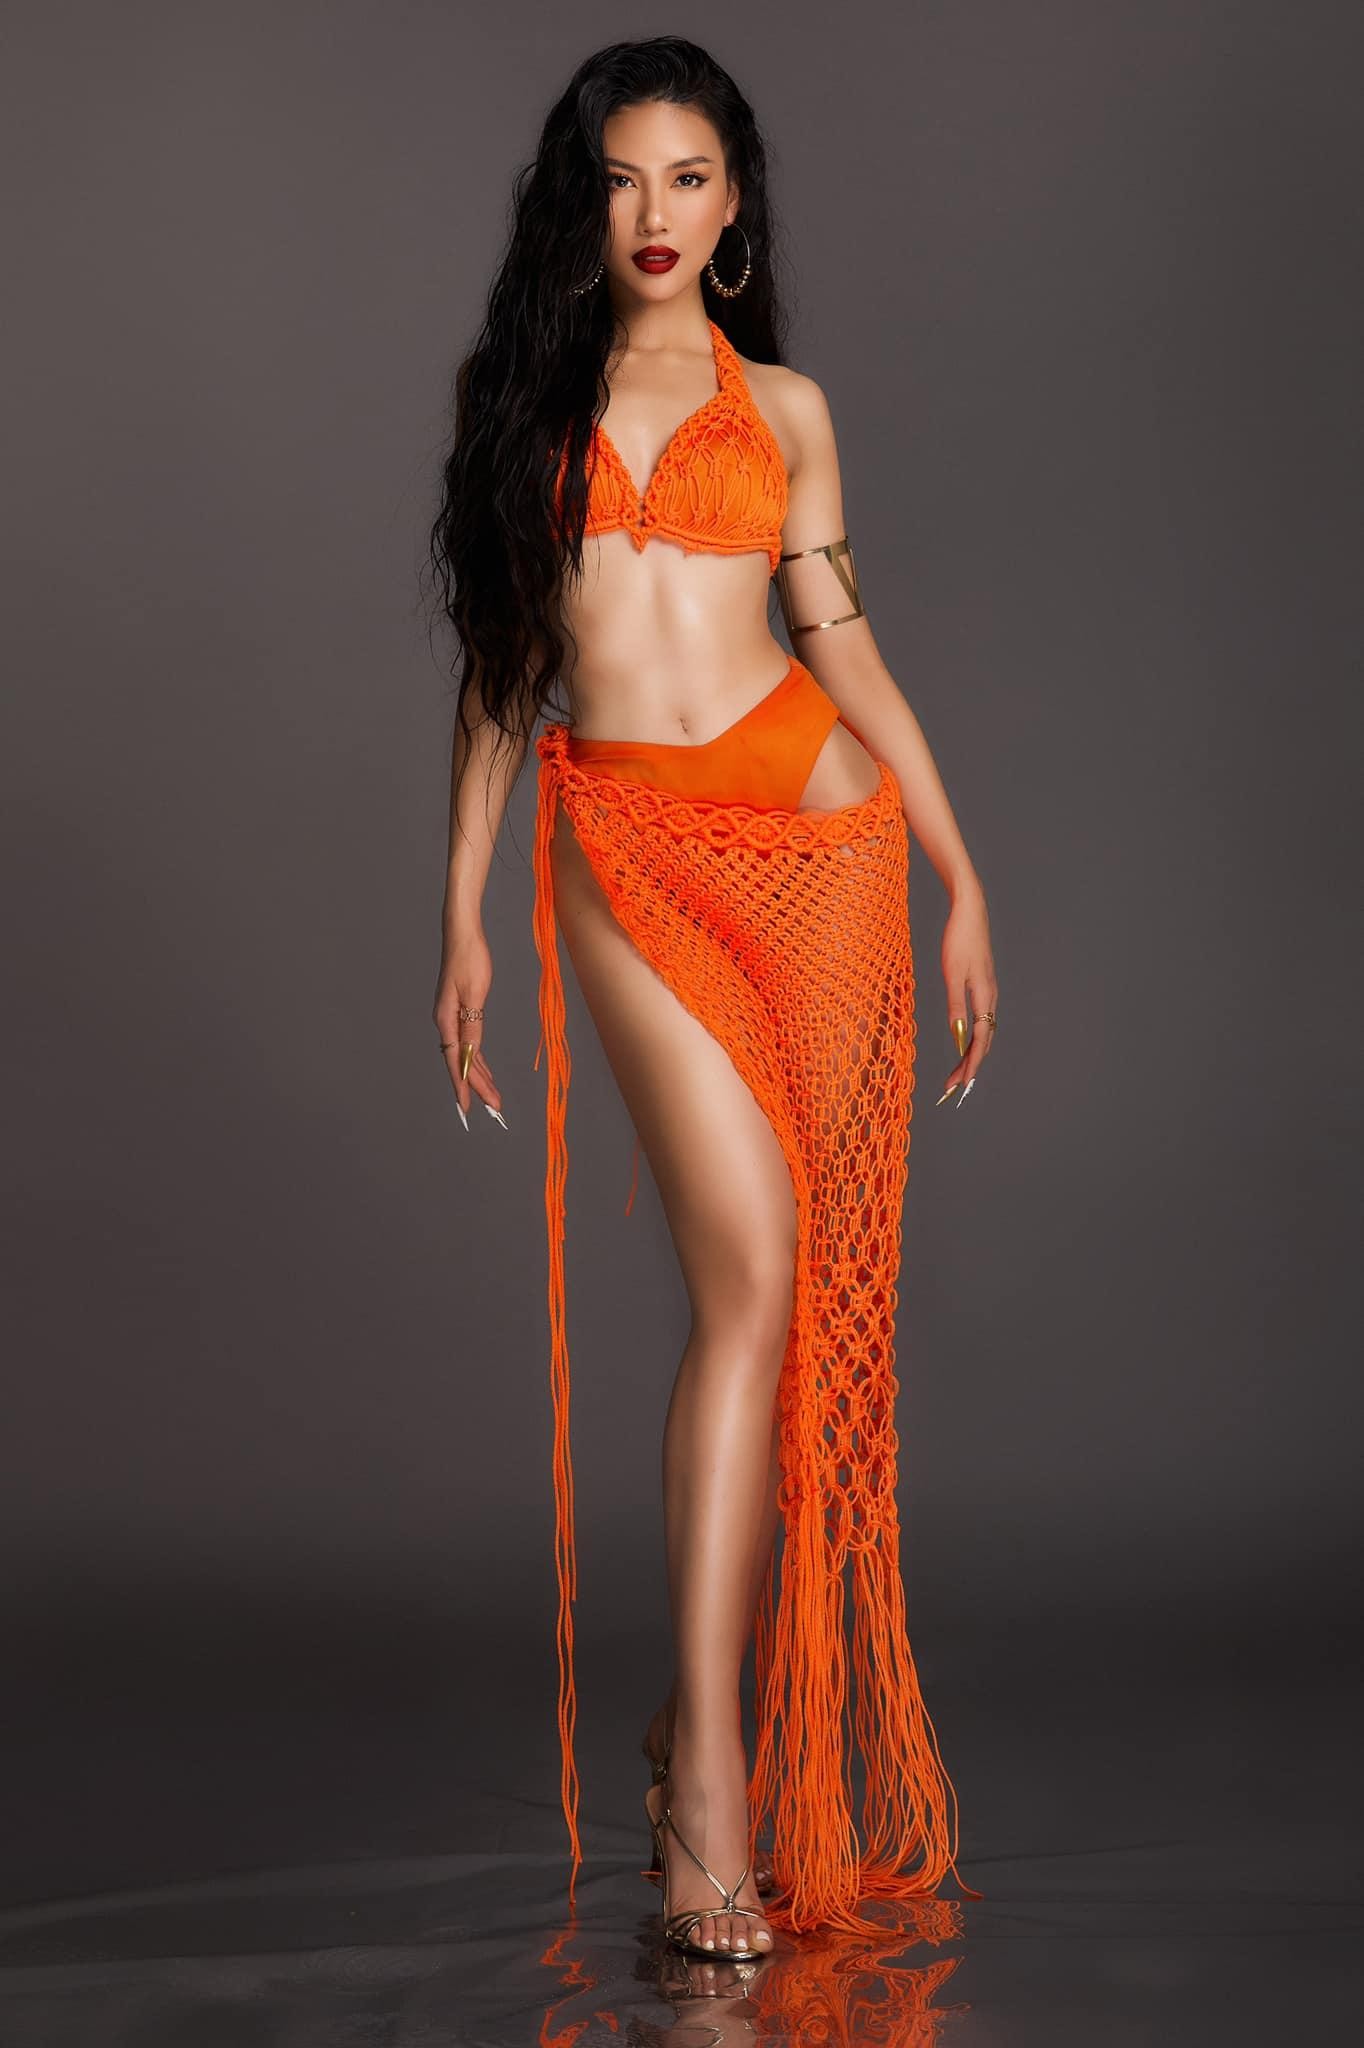 Mặc lại áo tắm của Thuỳ Tiên, Bùi Quỳnh Hoa mang sắc vóc sexy đến với Supermodel International - Ảnh 1.